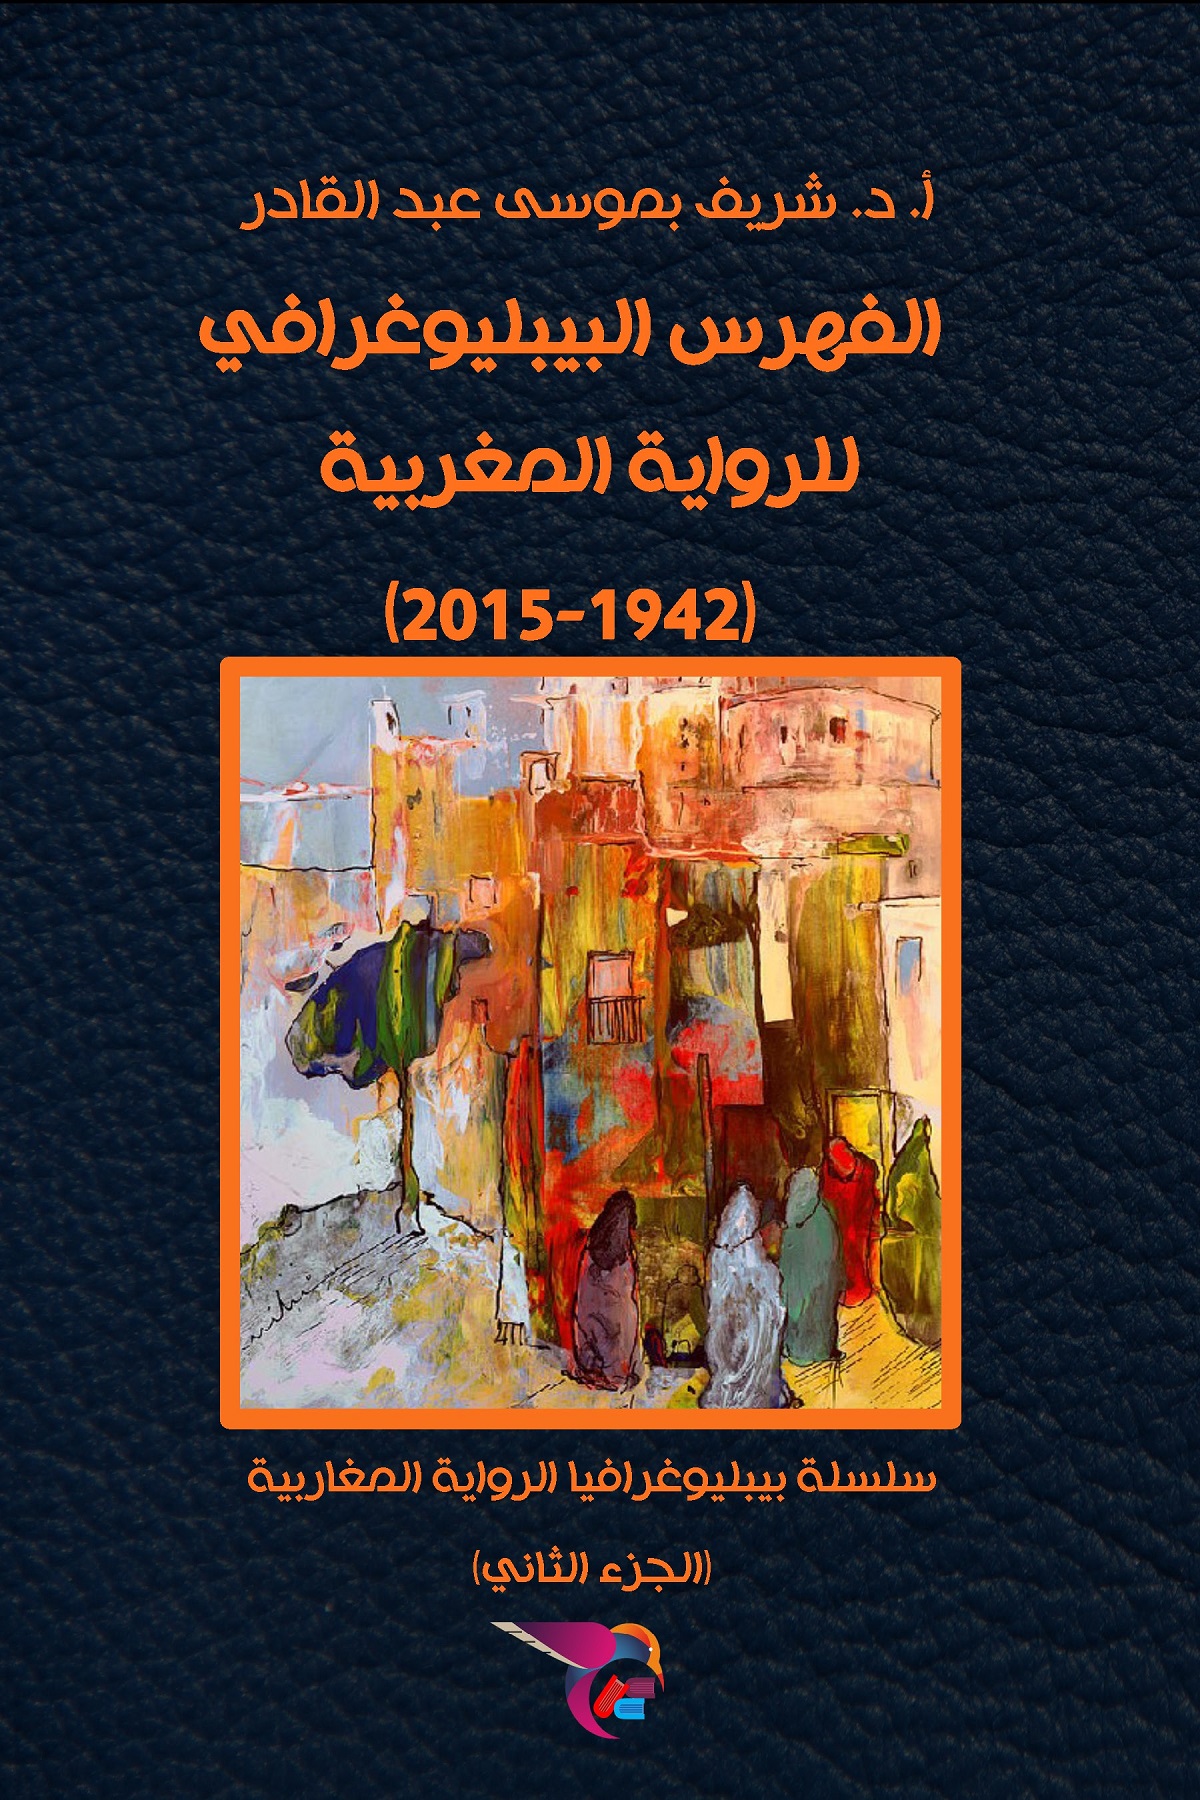 الفهرس البيبليوغرافي للرواية المغربية (1942 – 2015)